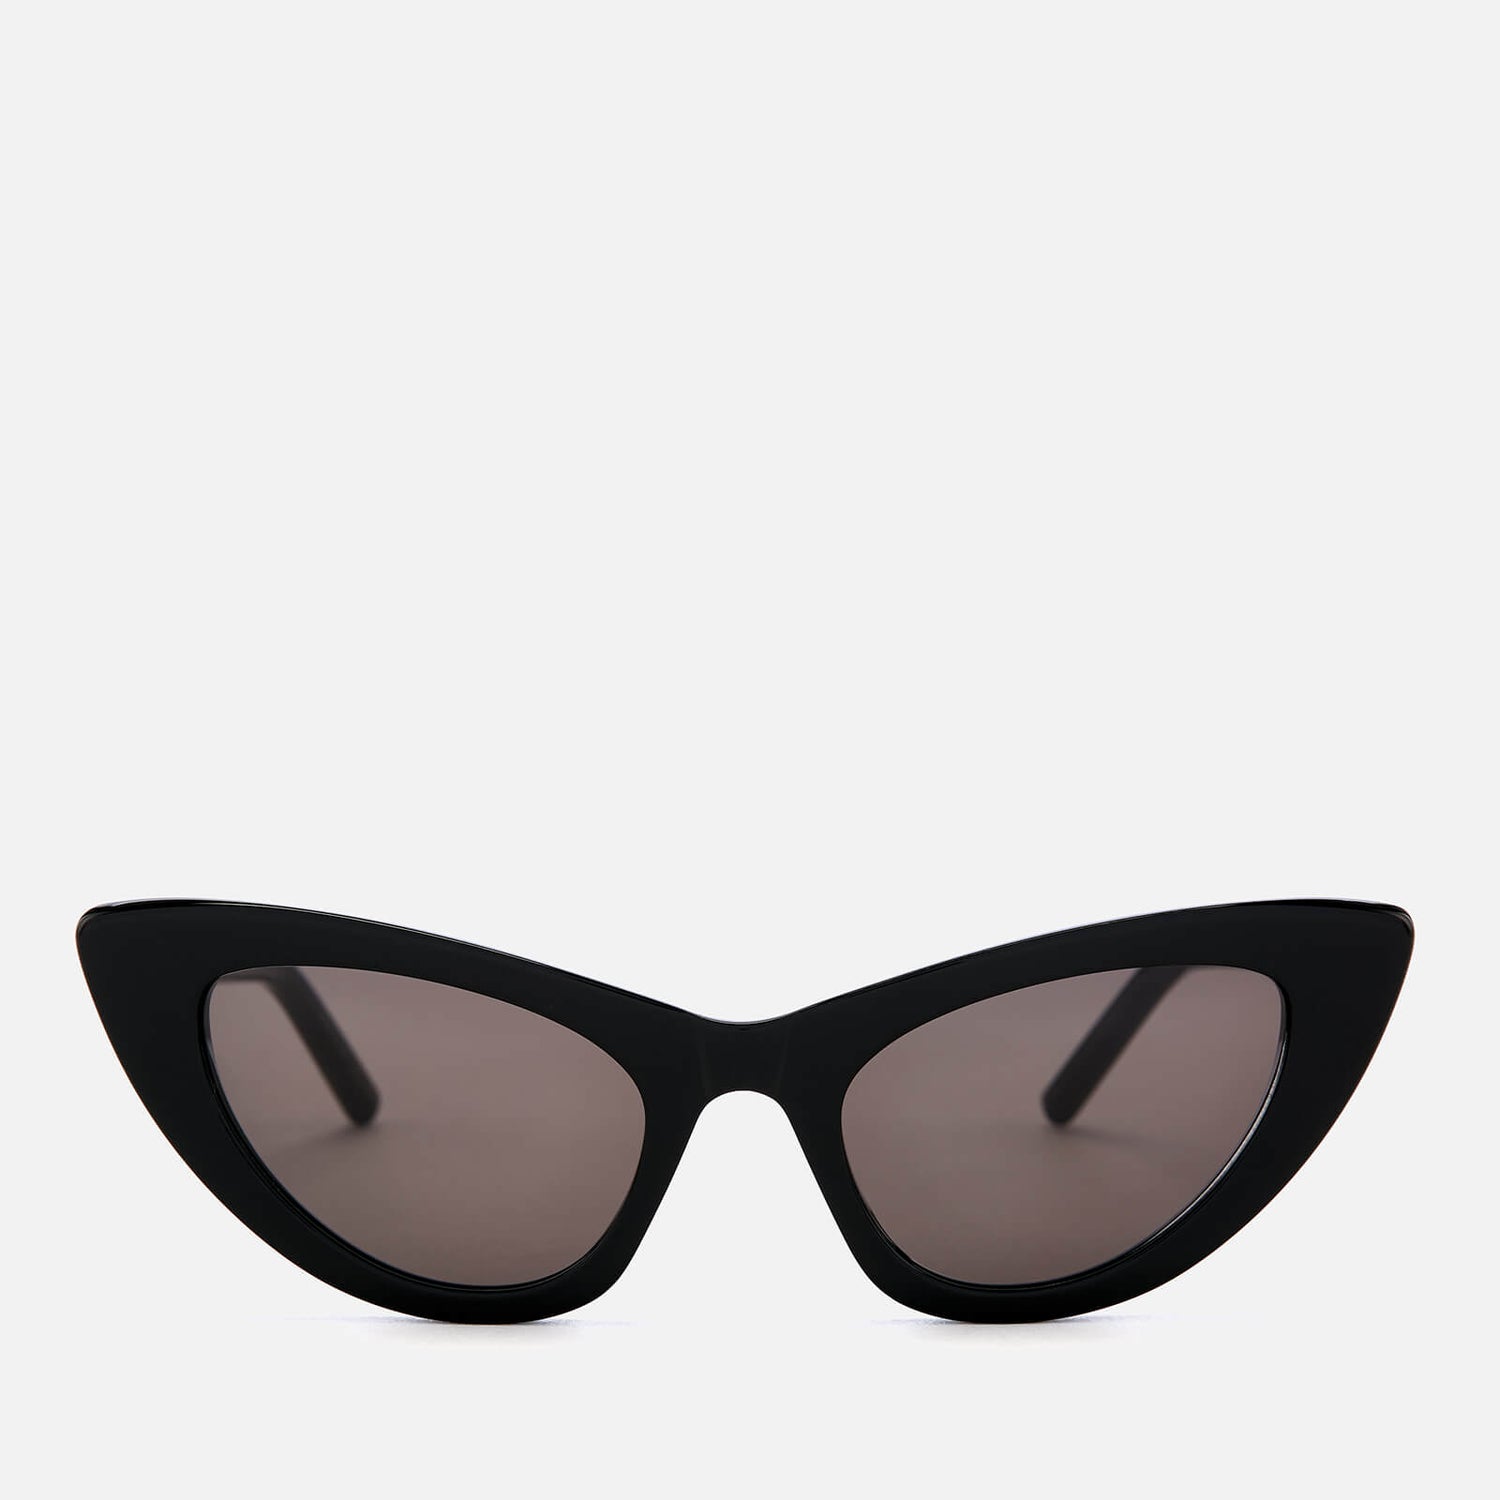 Saint Laurent Women's Lily Cat-Eye Frame Sunglasses - Black